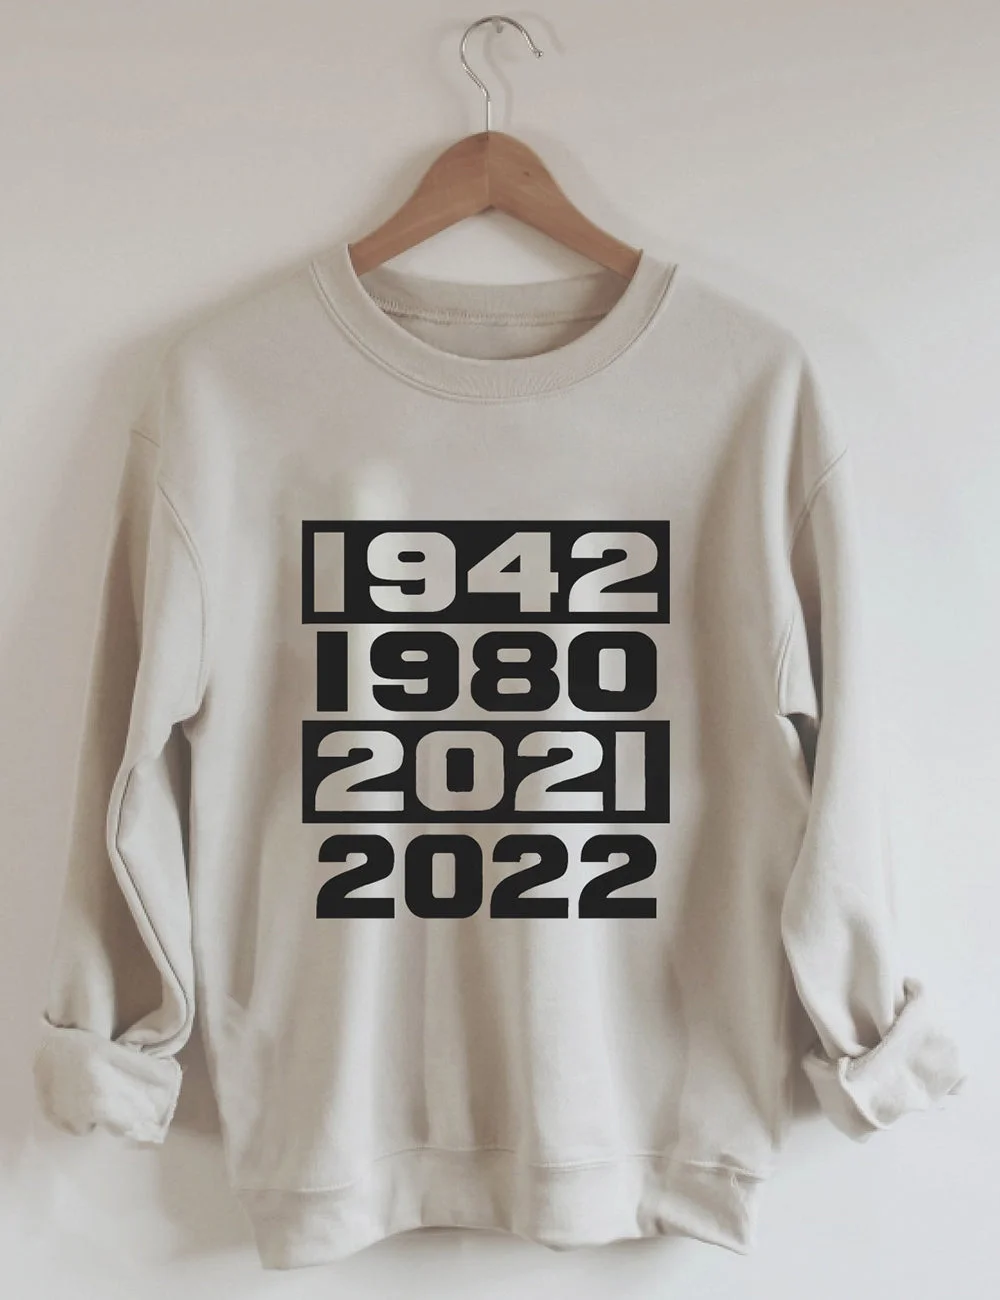 1942 1980 2021 2022 Sweatshirt